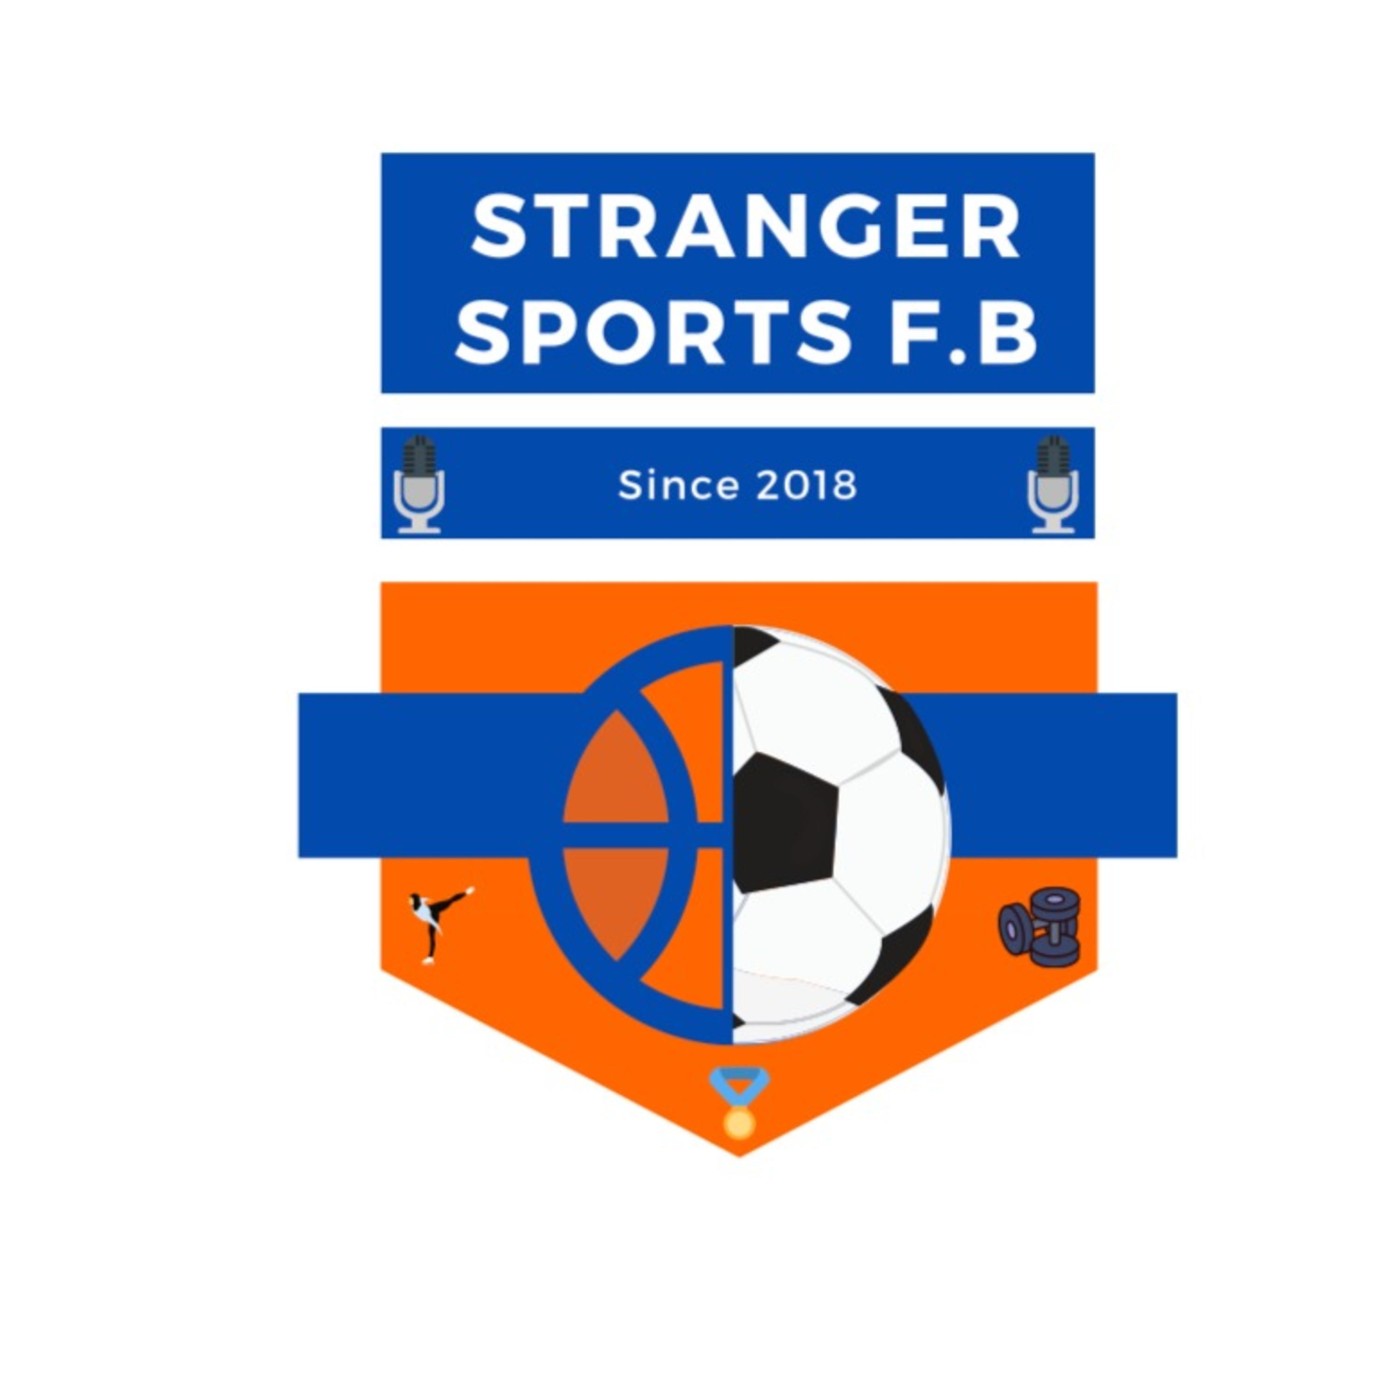 Stranger sports #6